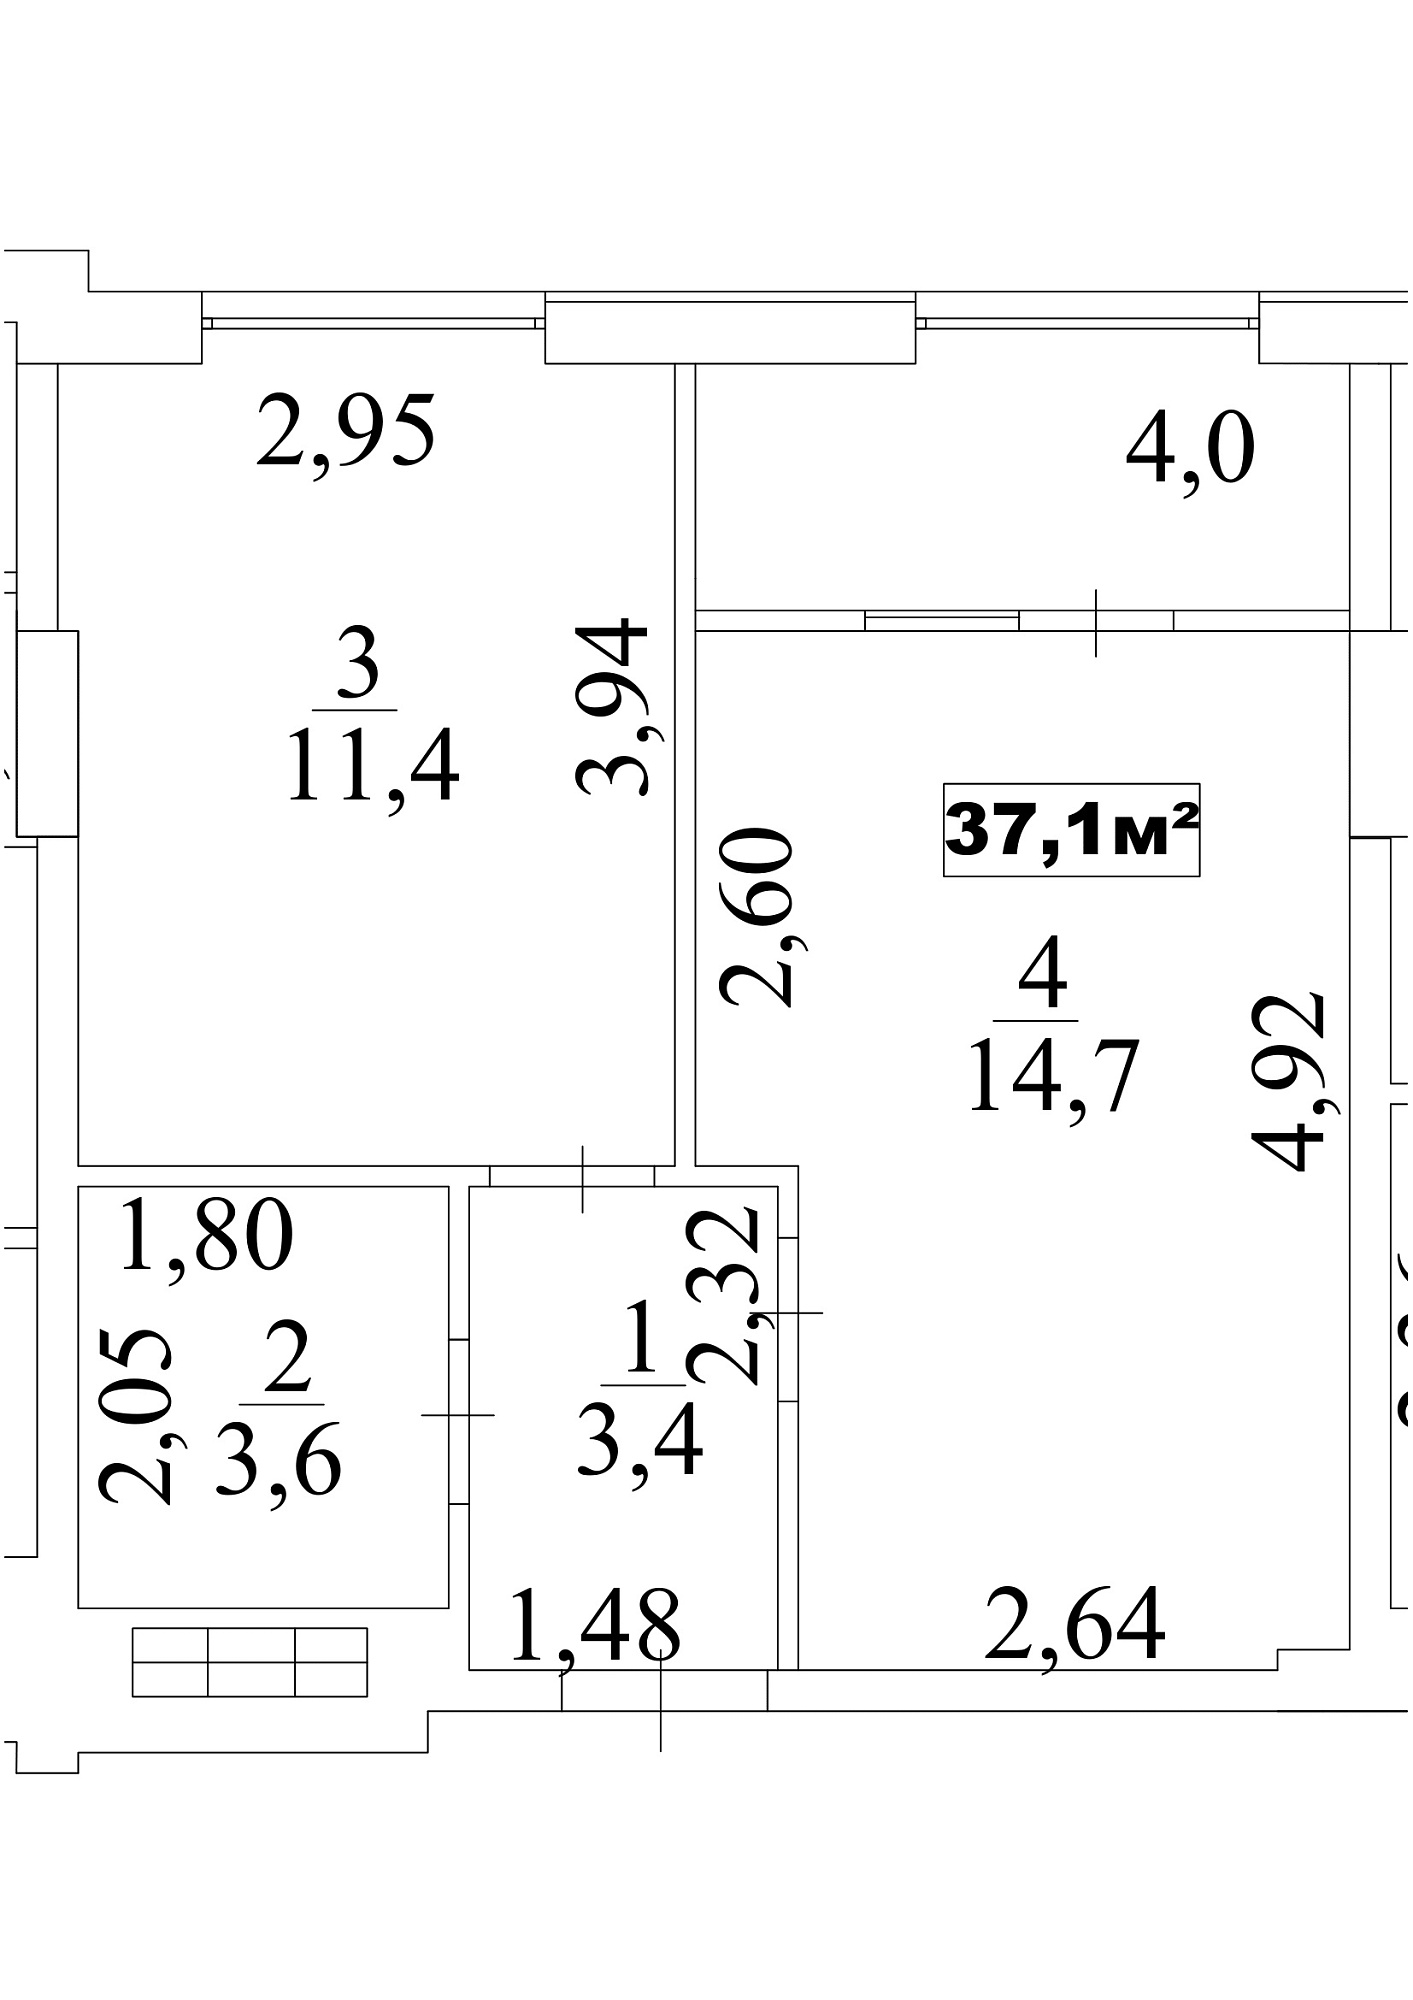 Планировка 1-к квартира площей 37.1м2, AB-10-06/00051.